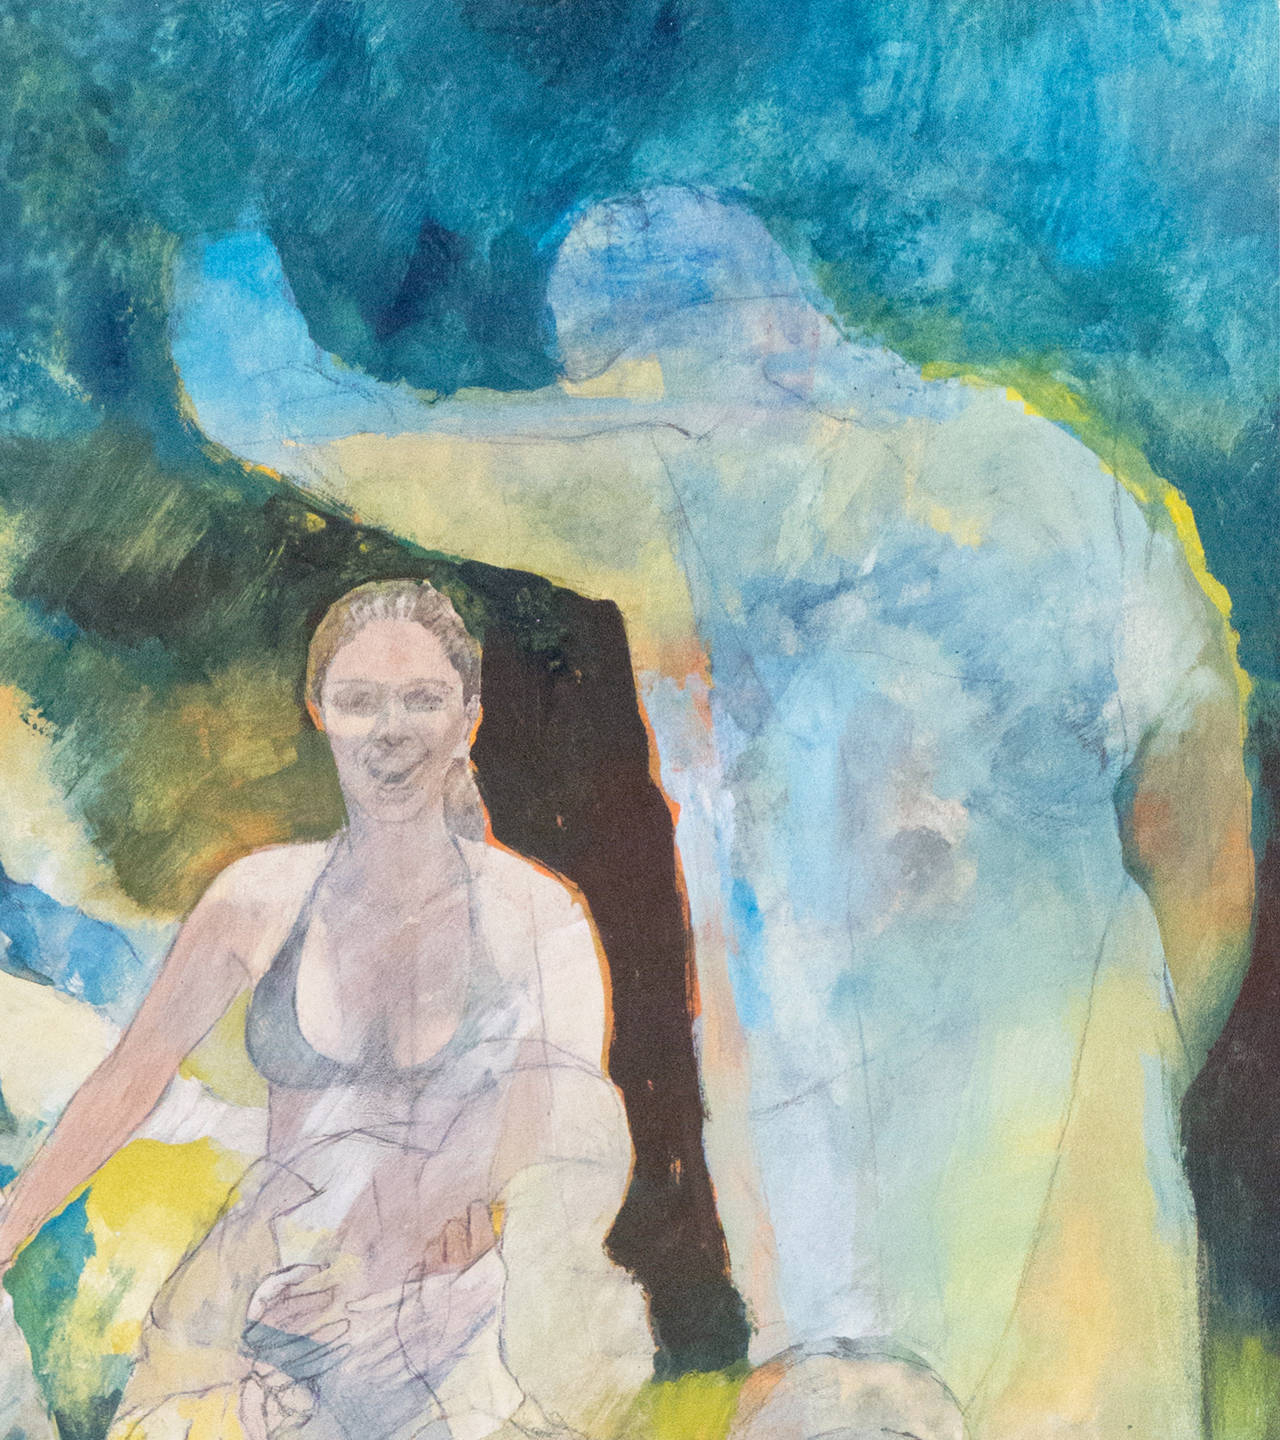 Une grande étude de plusieurs personnes en action contrastant sur un fond de jaune safran et de bleu céruléen. 

Signé en bas à droite 'Moesle', peint vers 1975 et titré au verso 'On That Day'.

Né en 1932, Robert Moesle a étudié la peinture à San